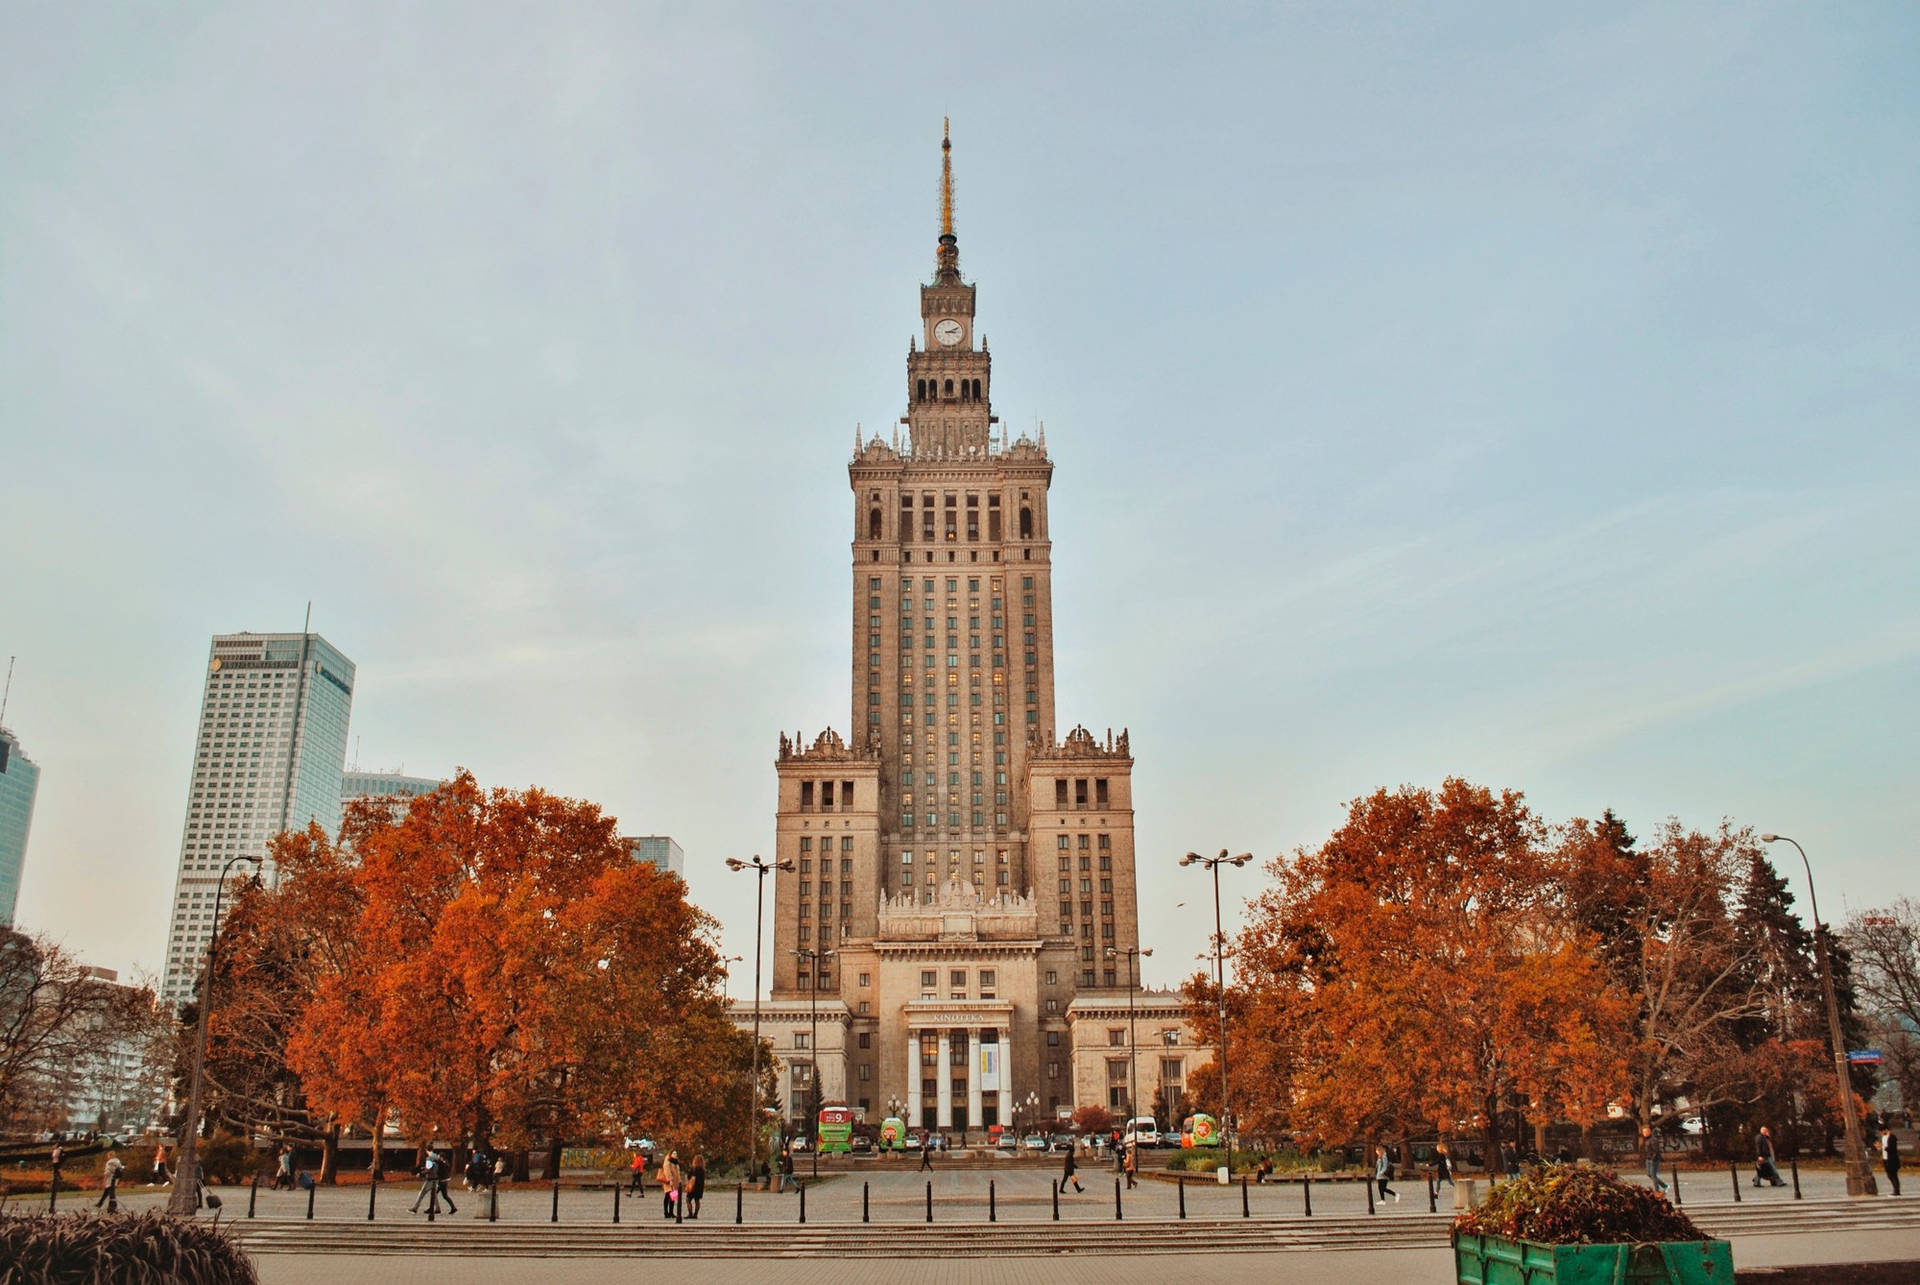 Palácioda Cultura Da Polônia - Outono. Papel de Parede